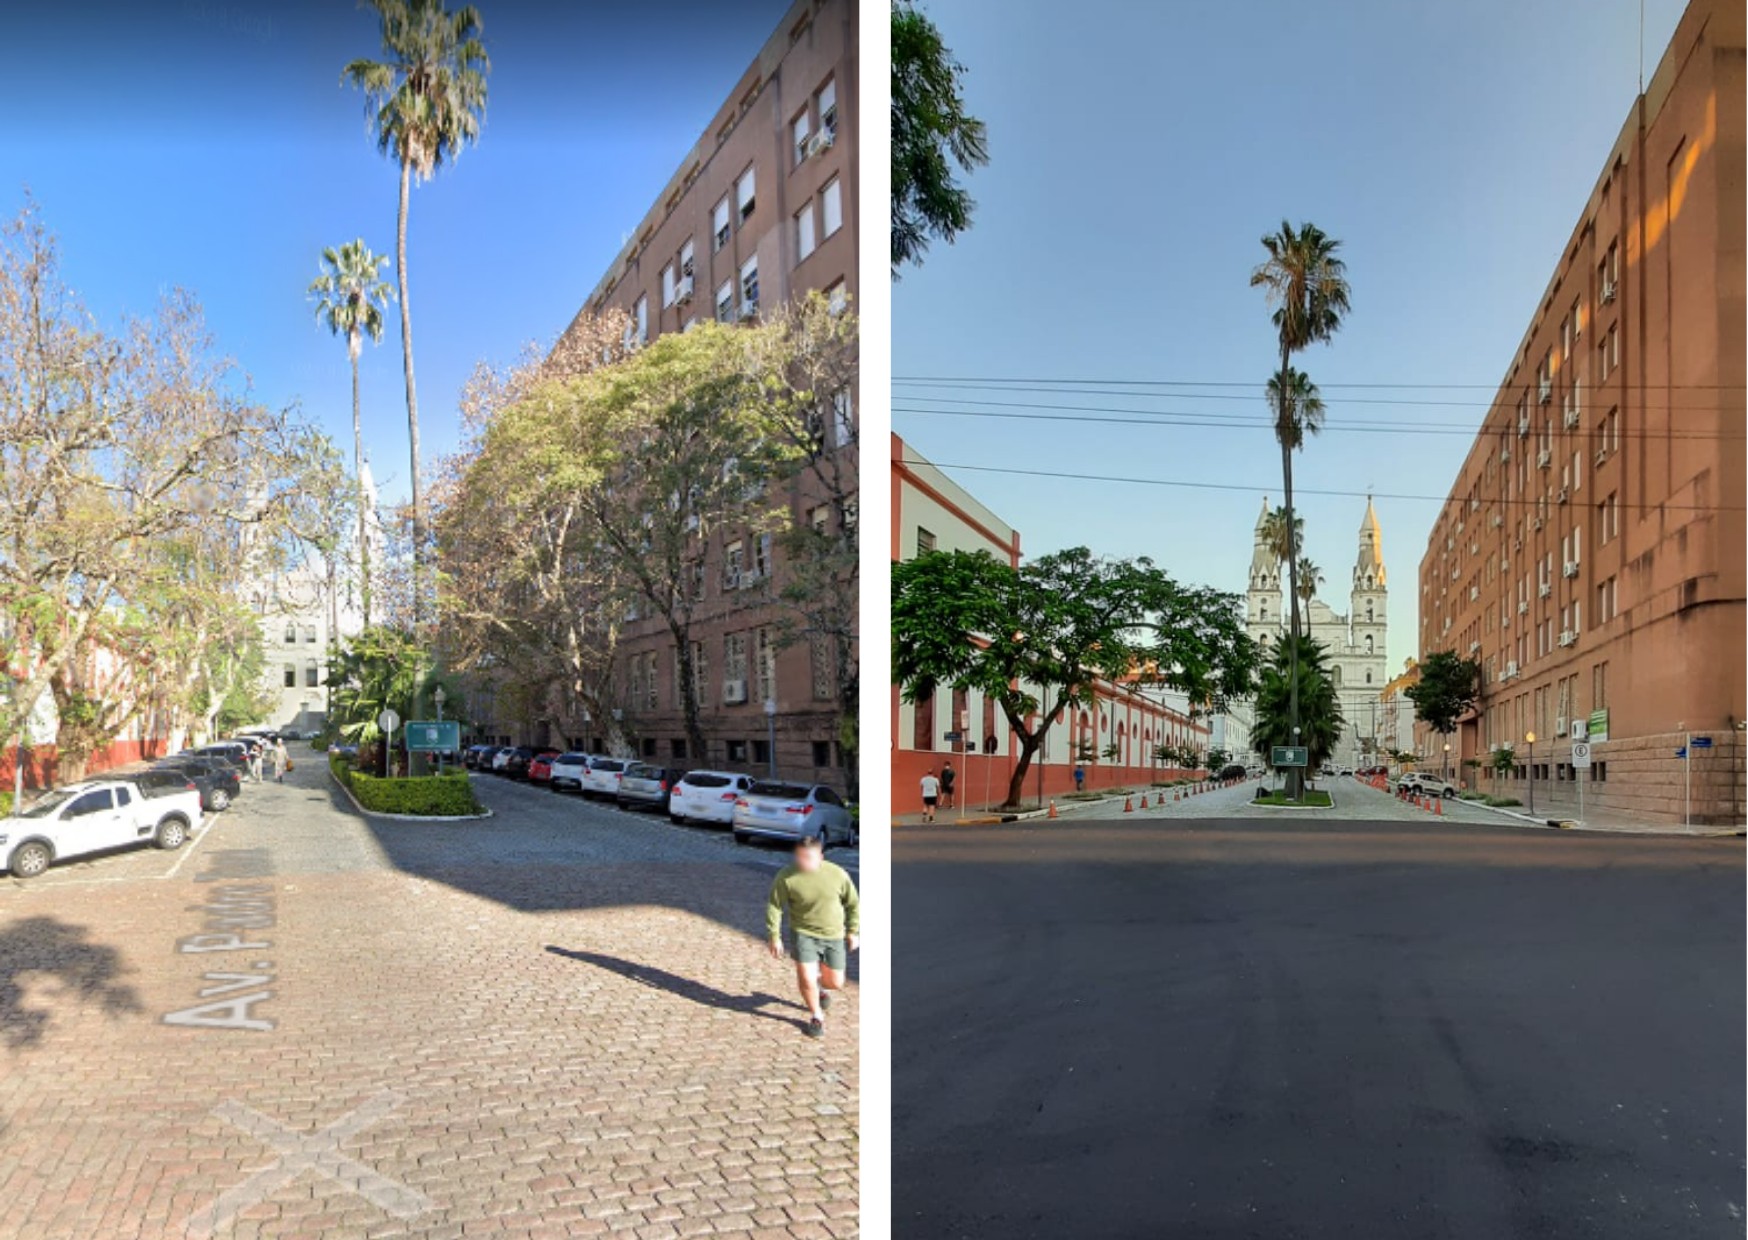 Justiça Federal determina que prefeitura de Porto Alegre remova asfalto em frente a igreja tombada 